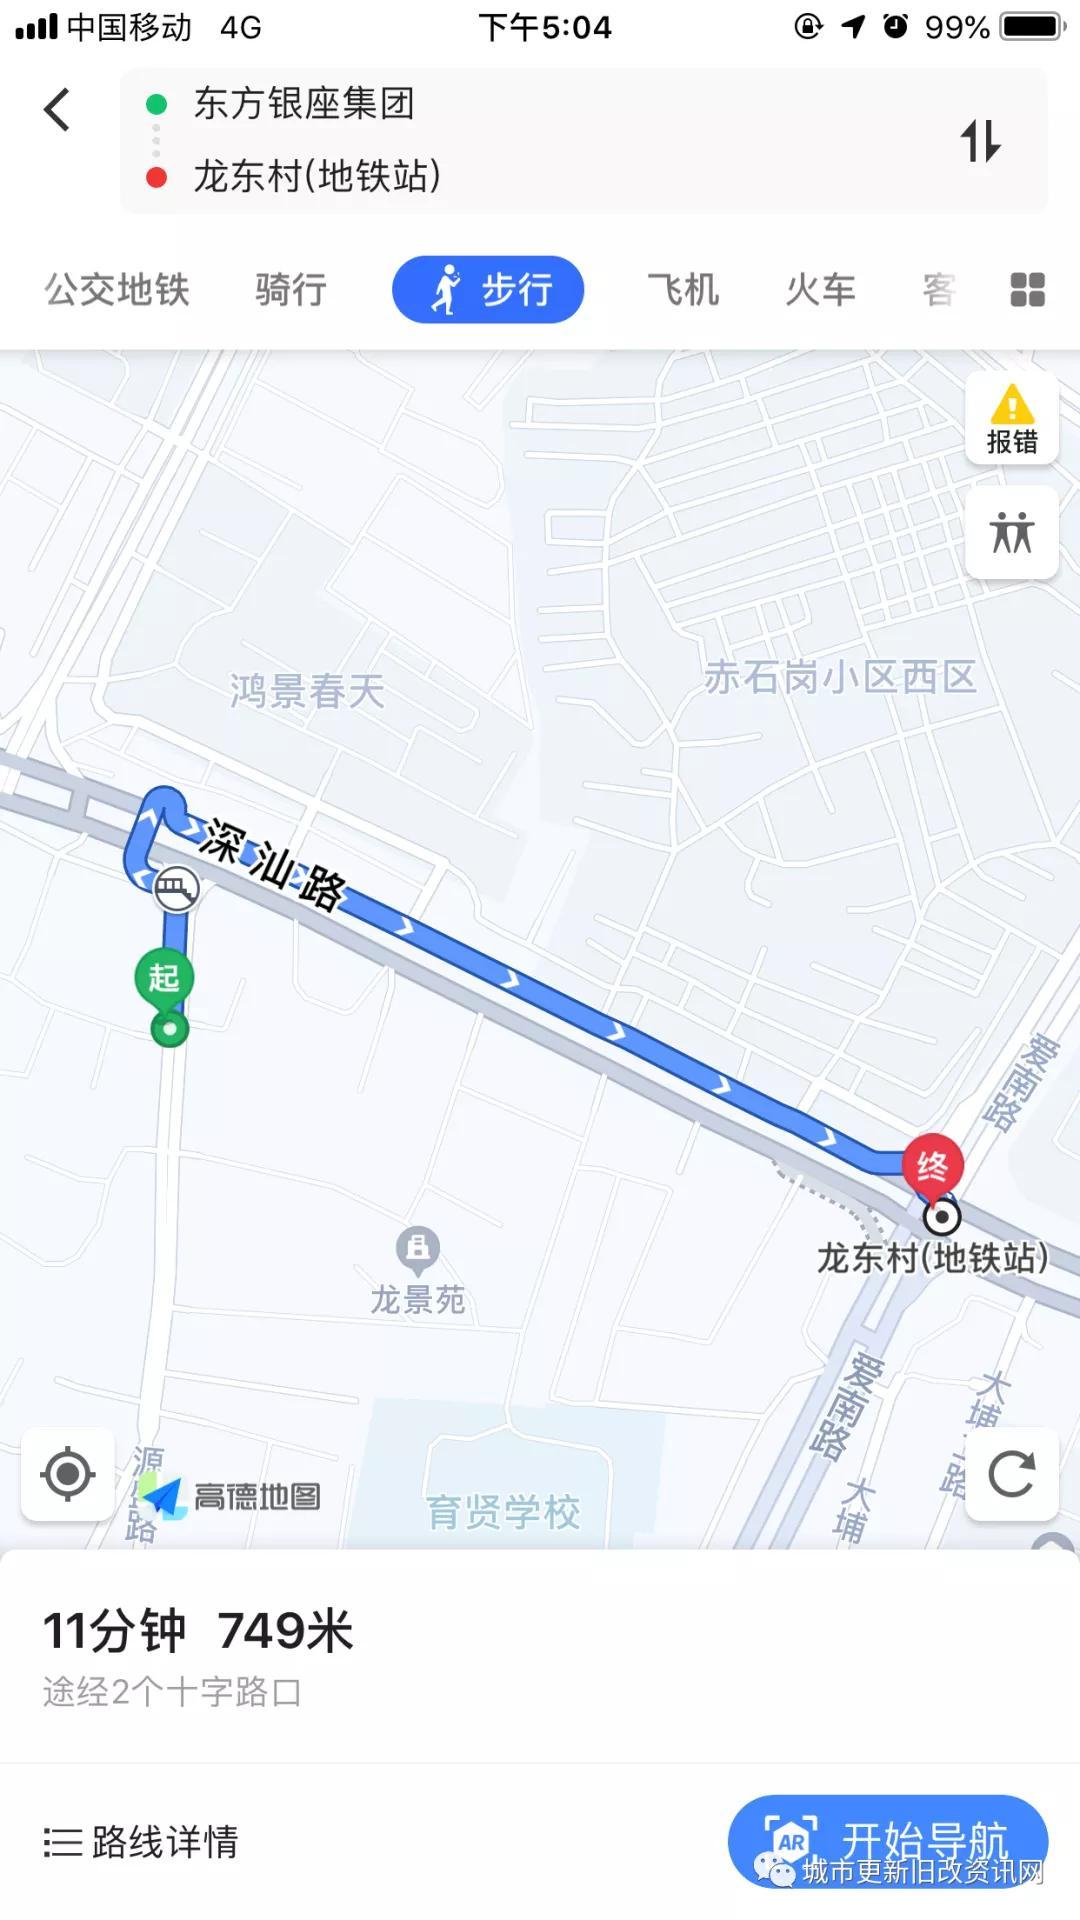 (1)约500米16号线龙南站,约700米16号线龙东村站,步行距离坐享双地铁